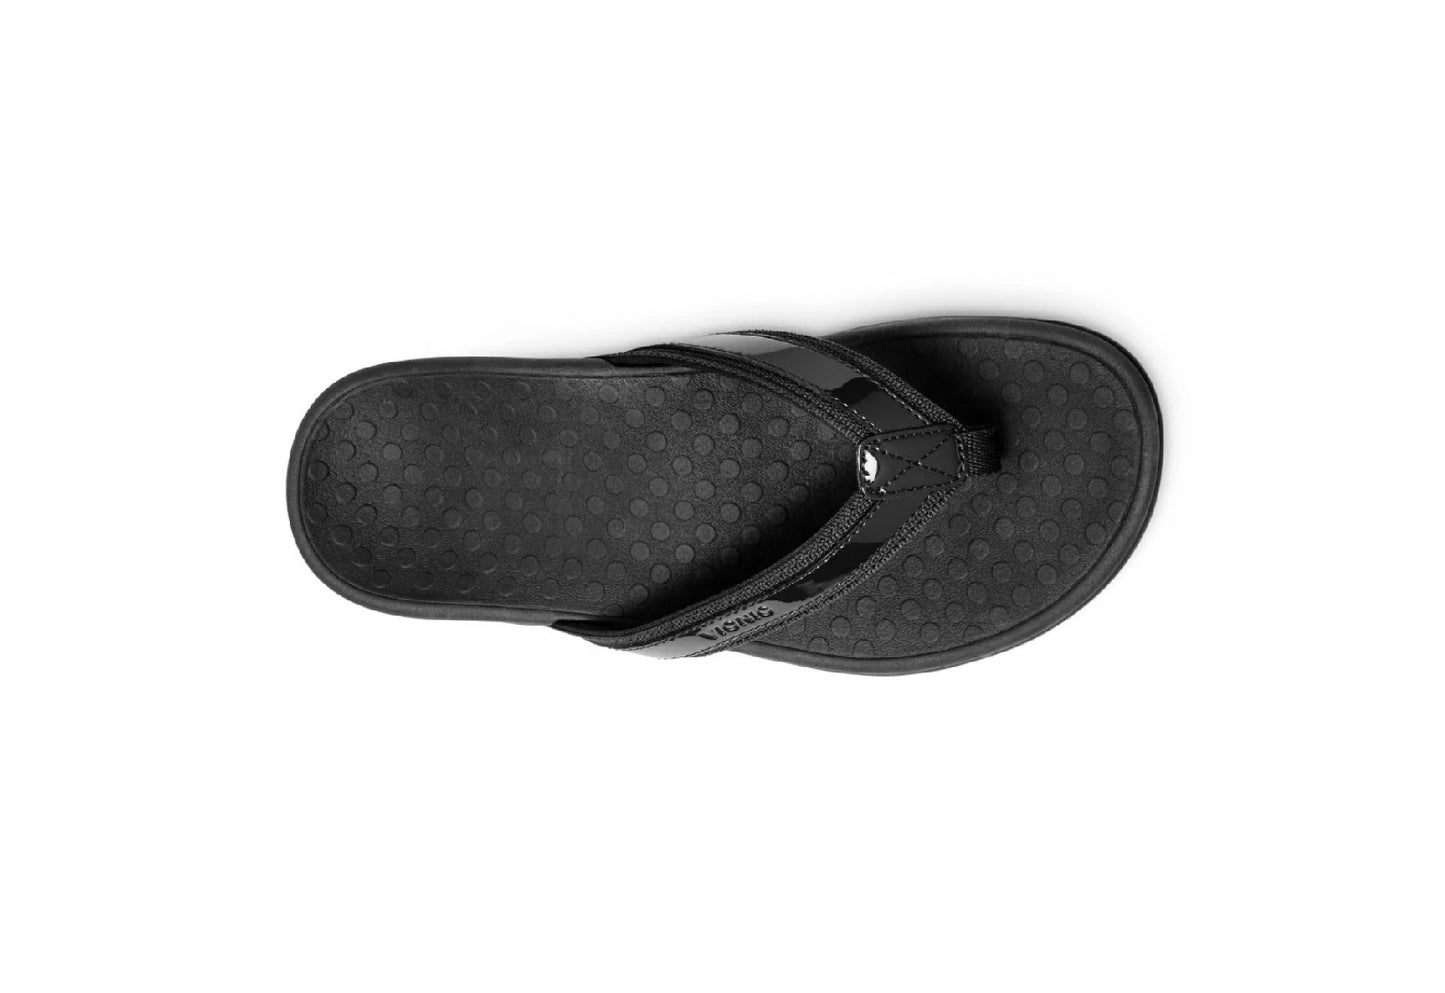 Vionic Women's Tide II Toe Post Sandals, Black